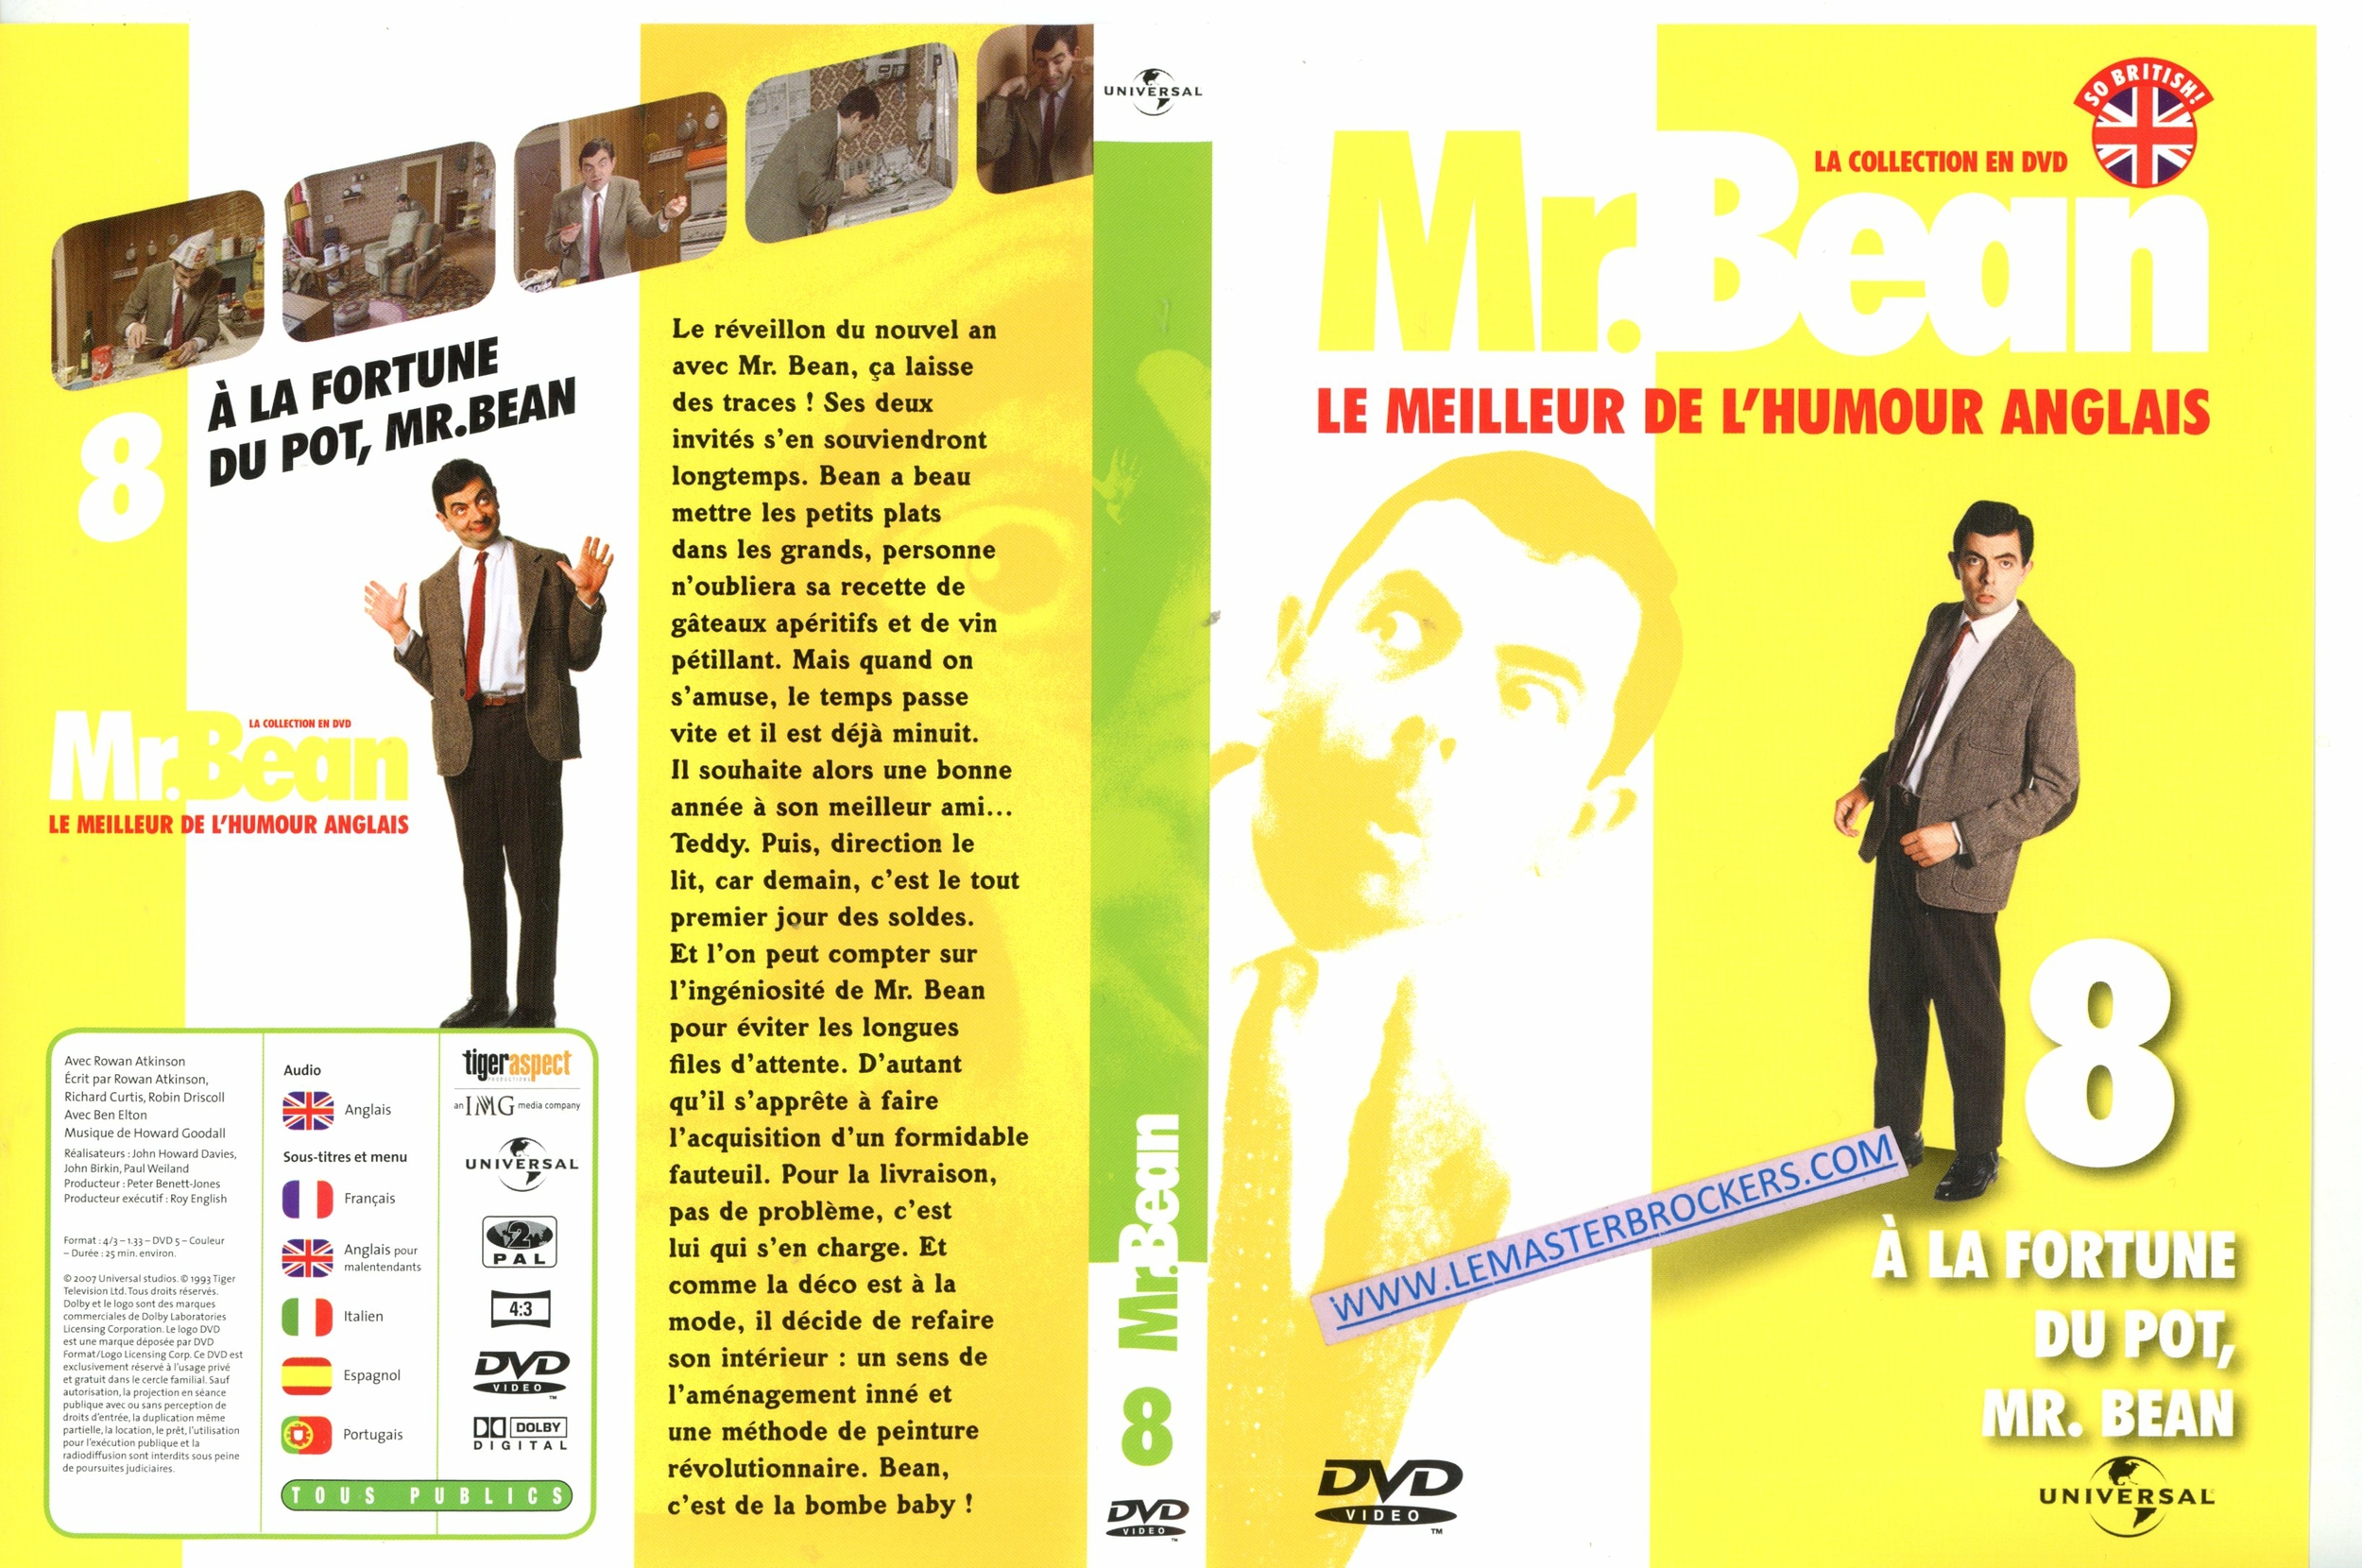 dvd A LA FORTUNE DU PORT DE Mr BEAN VOLUME 8